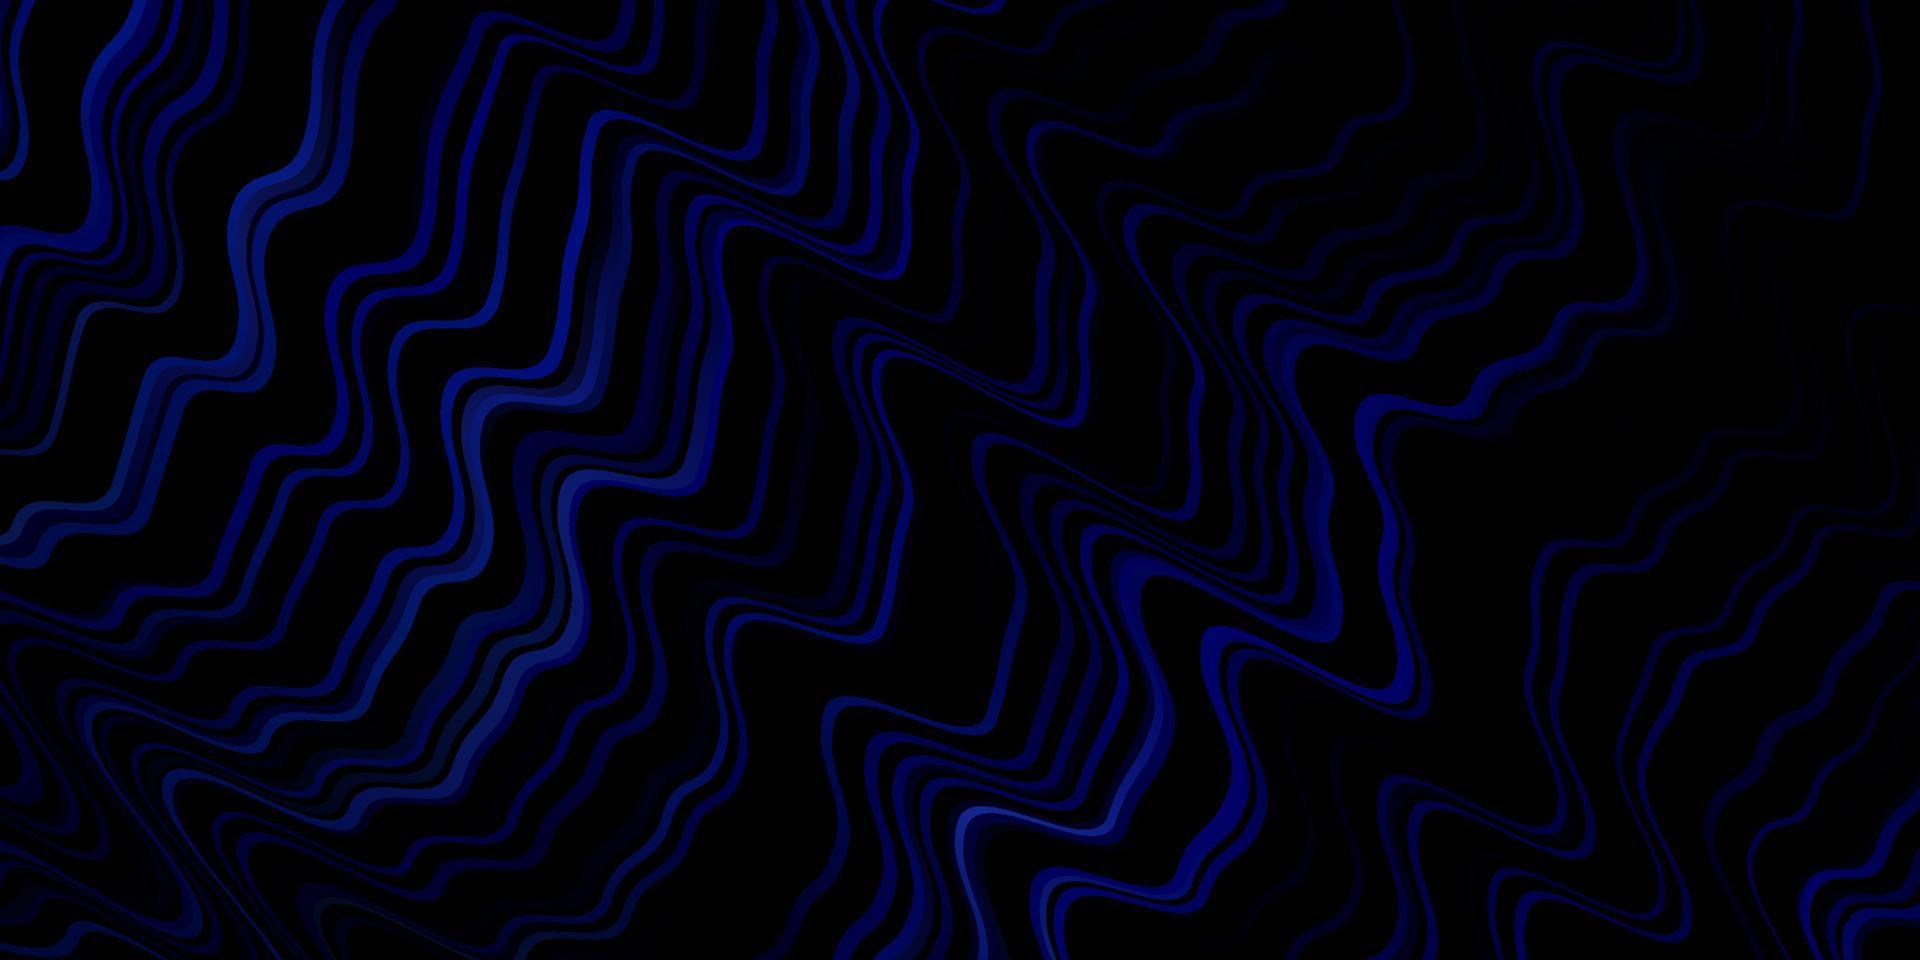 mörkblå vektormönster med linjer. vektor